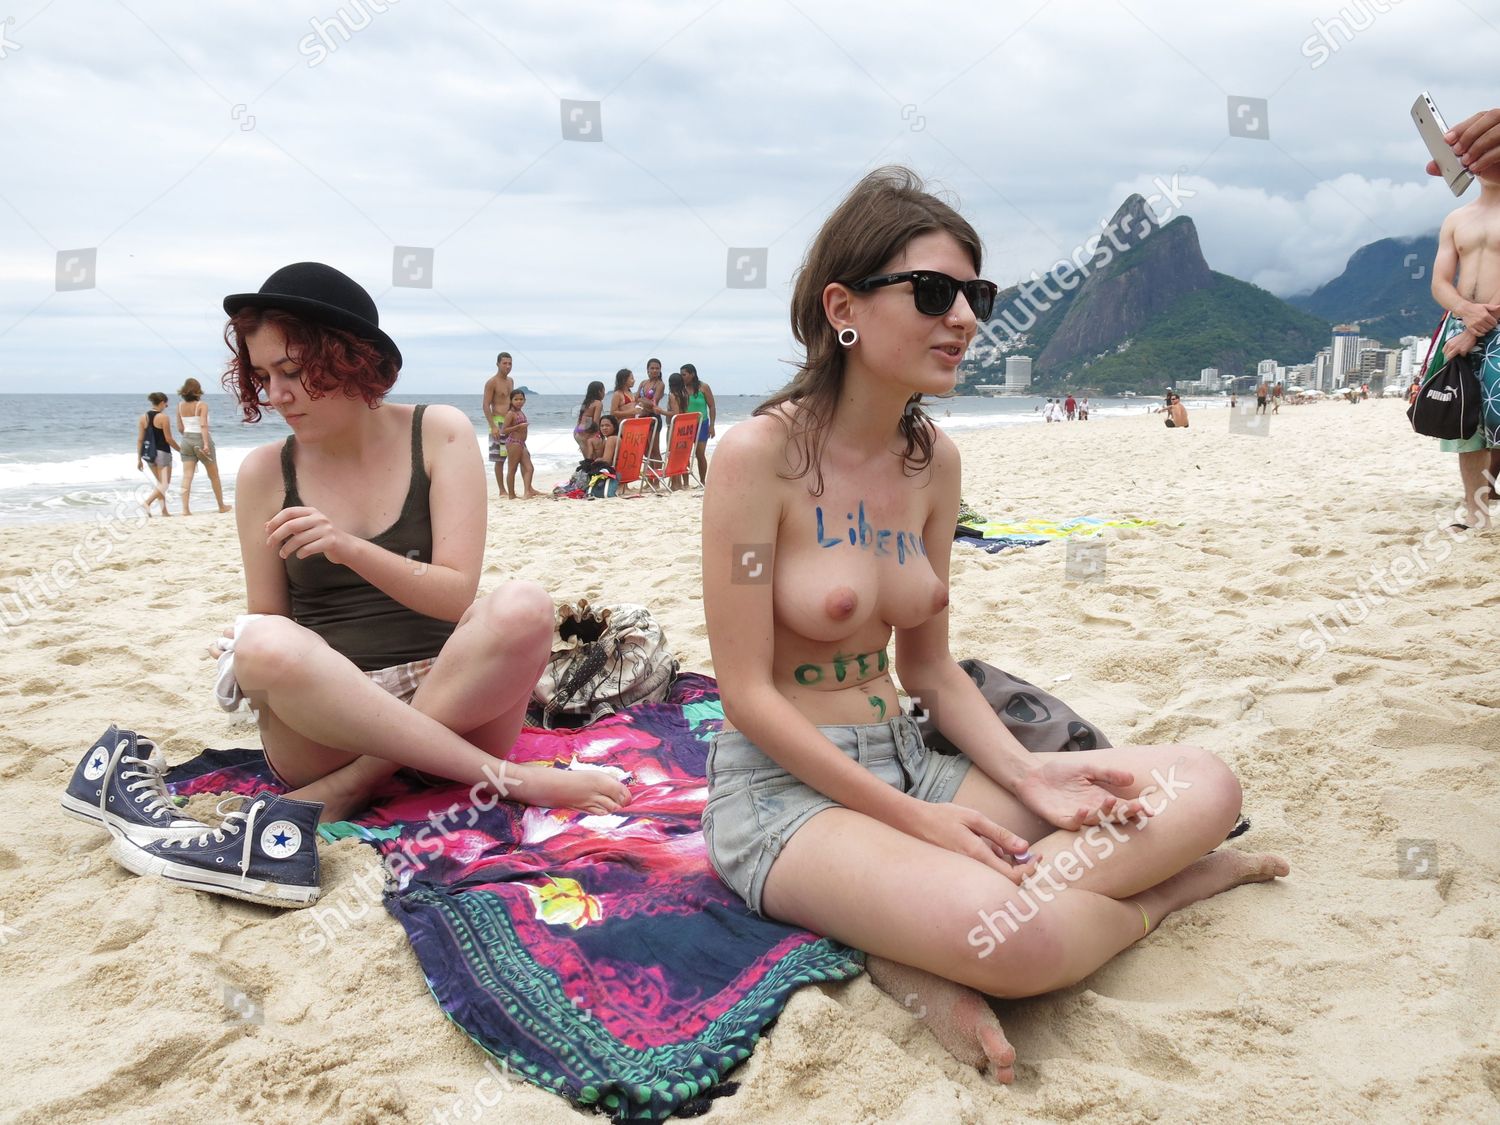 All at home nude in Rio de Janeiro